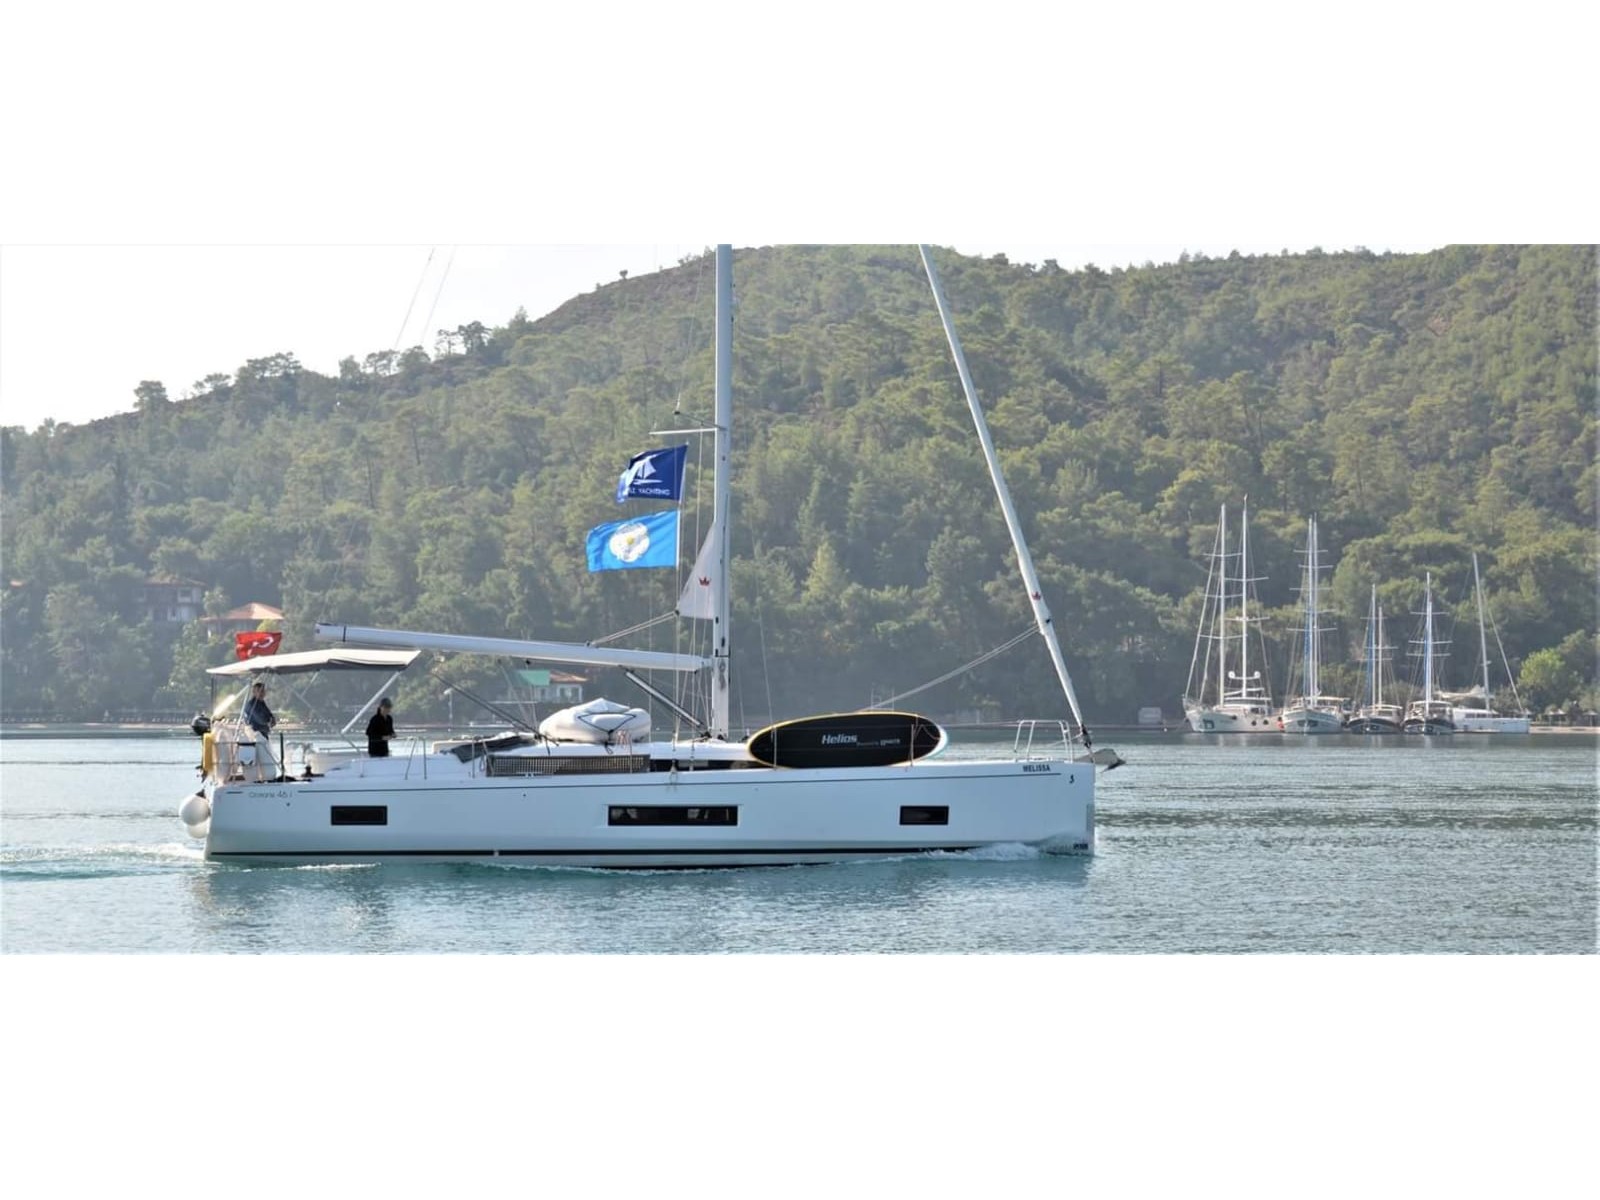 Oceanis 46.1 - Sailboat Charter Turkey & Boat hire in Turkey Turkish Riviera Lycian coast Fethiye Ece Saray Marina 2